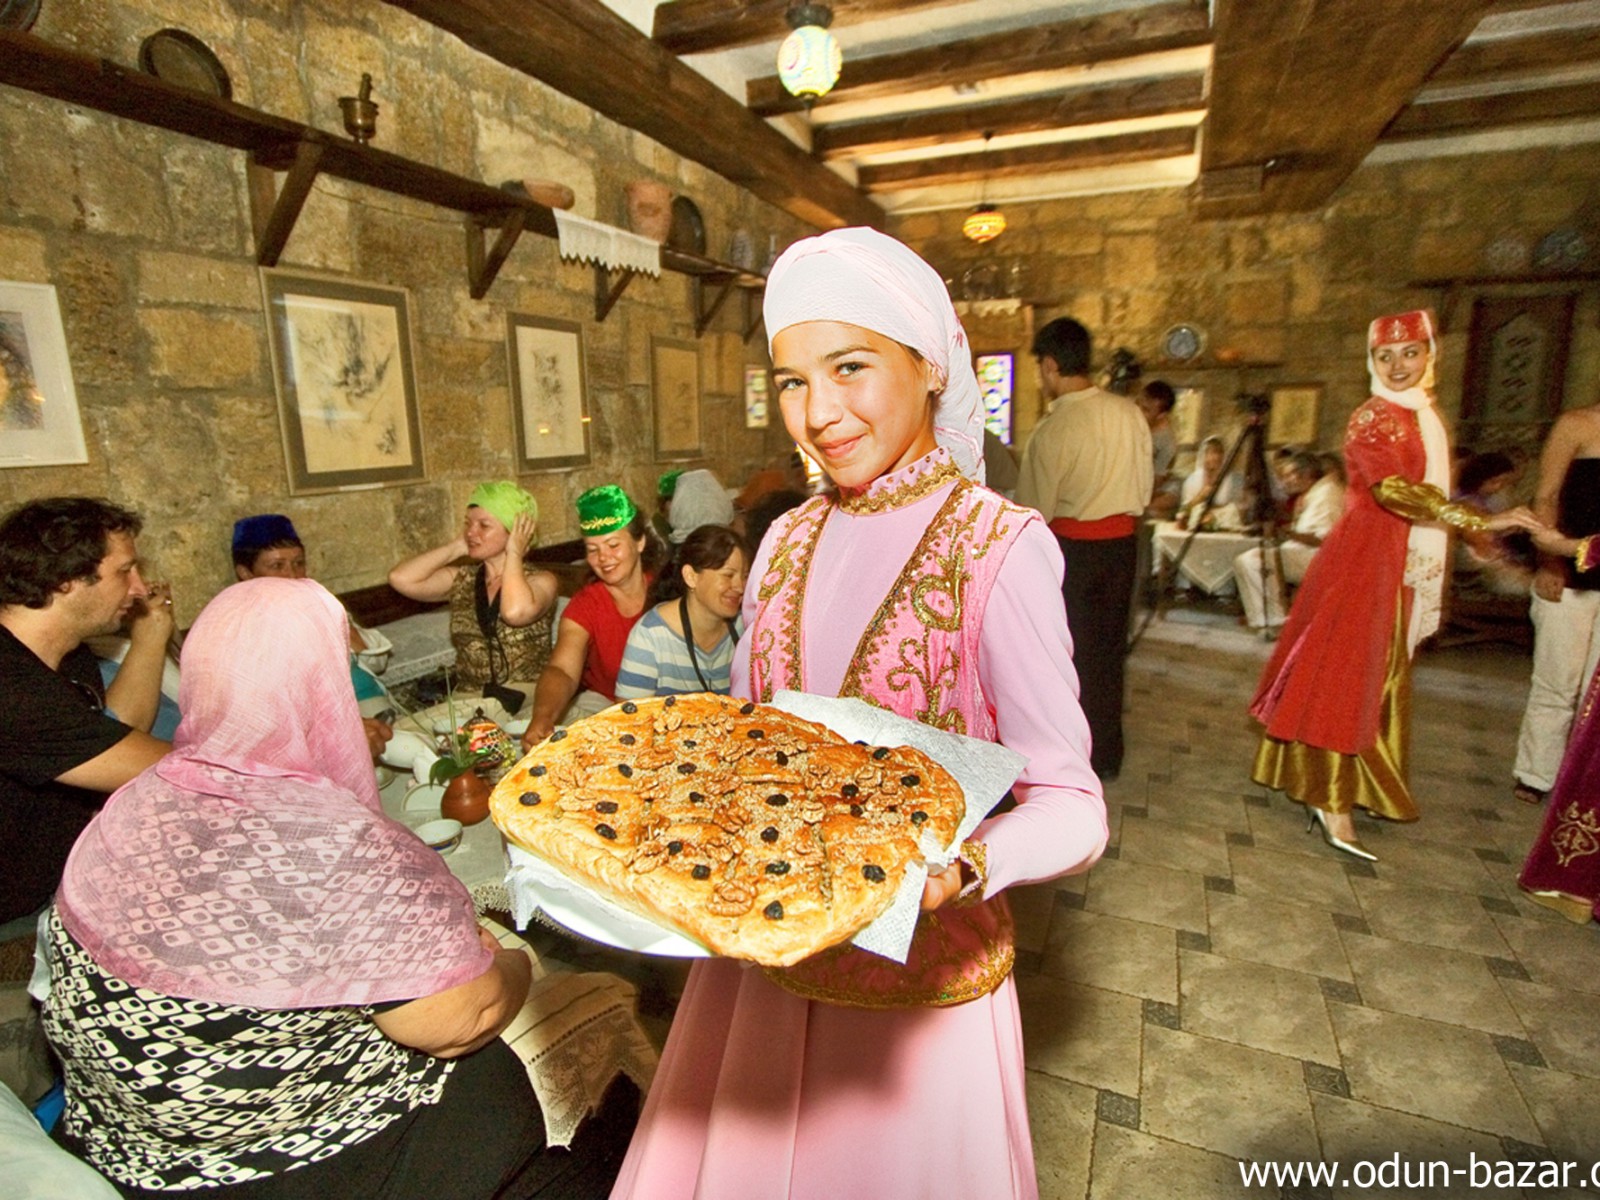 Крымскотатарская кухня